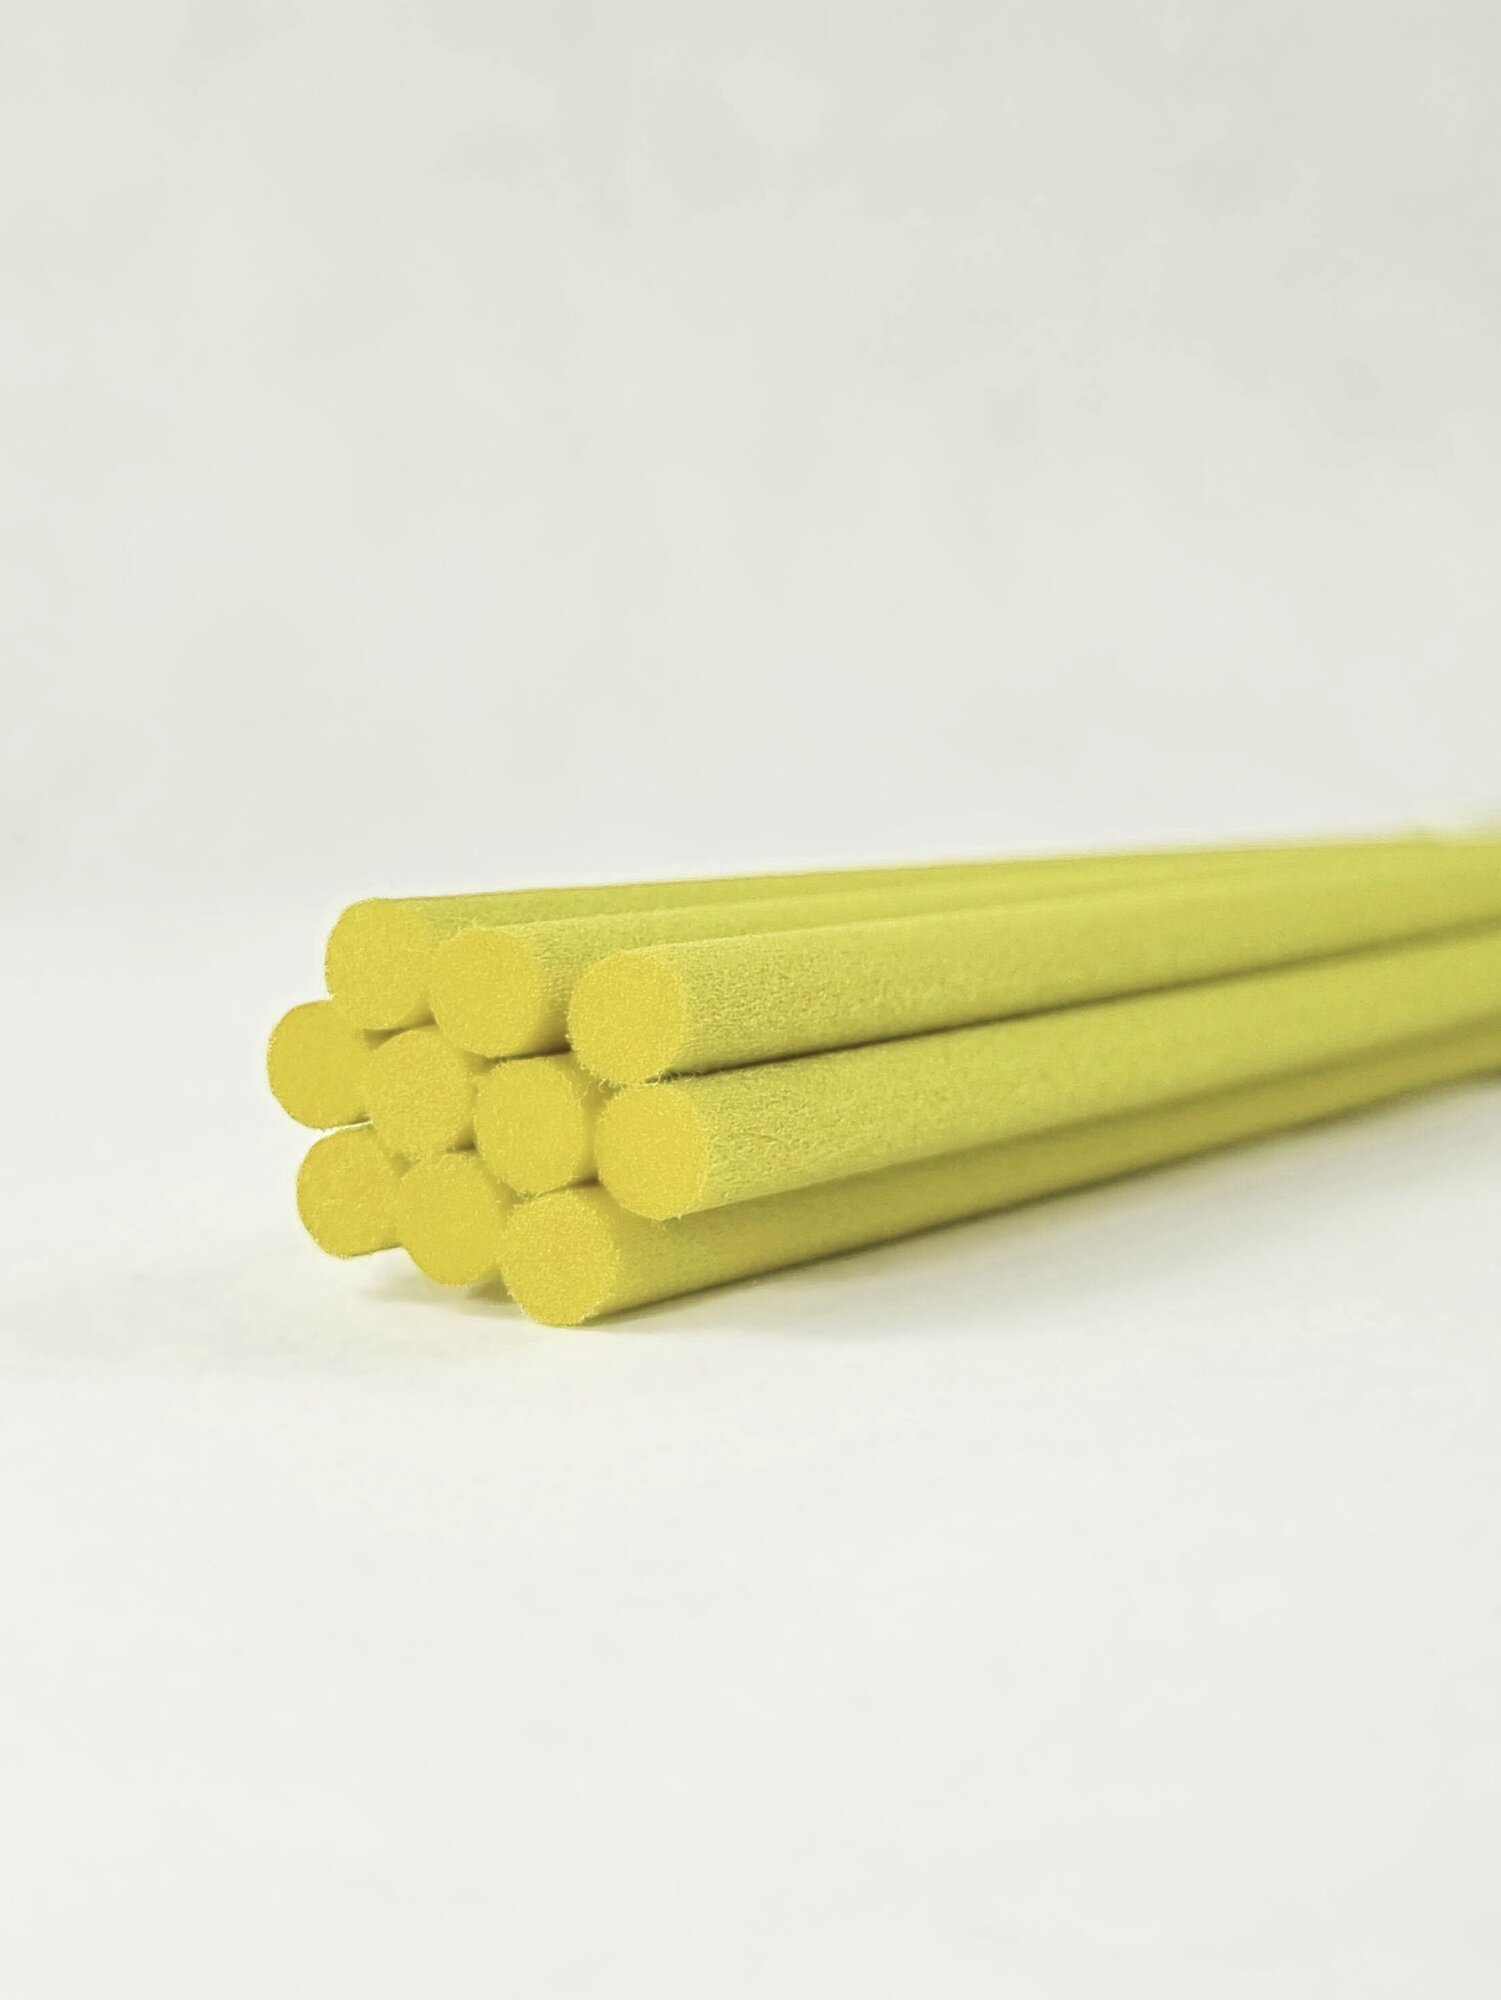 Фибровые палочки для ароматического диффузора желтые, 10 штук, 22 см/5 мм